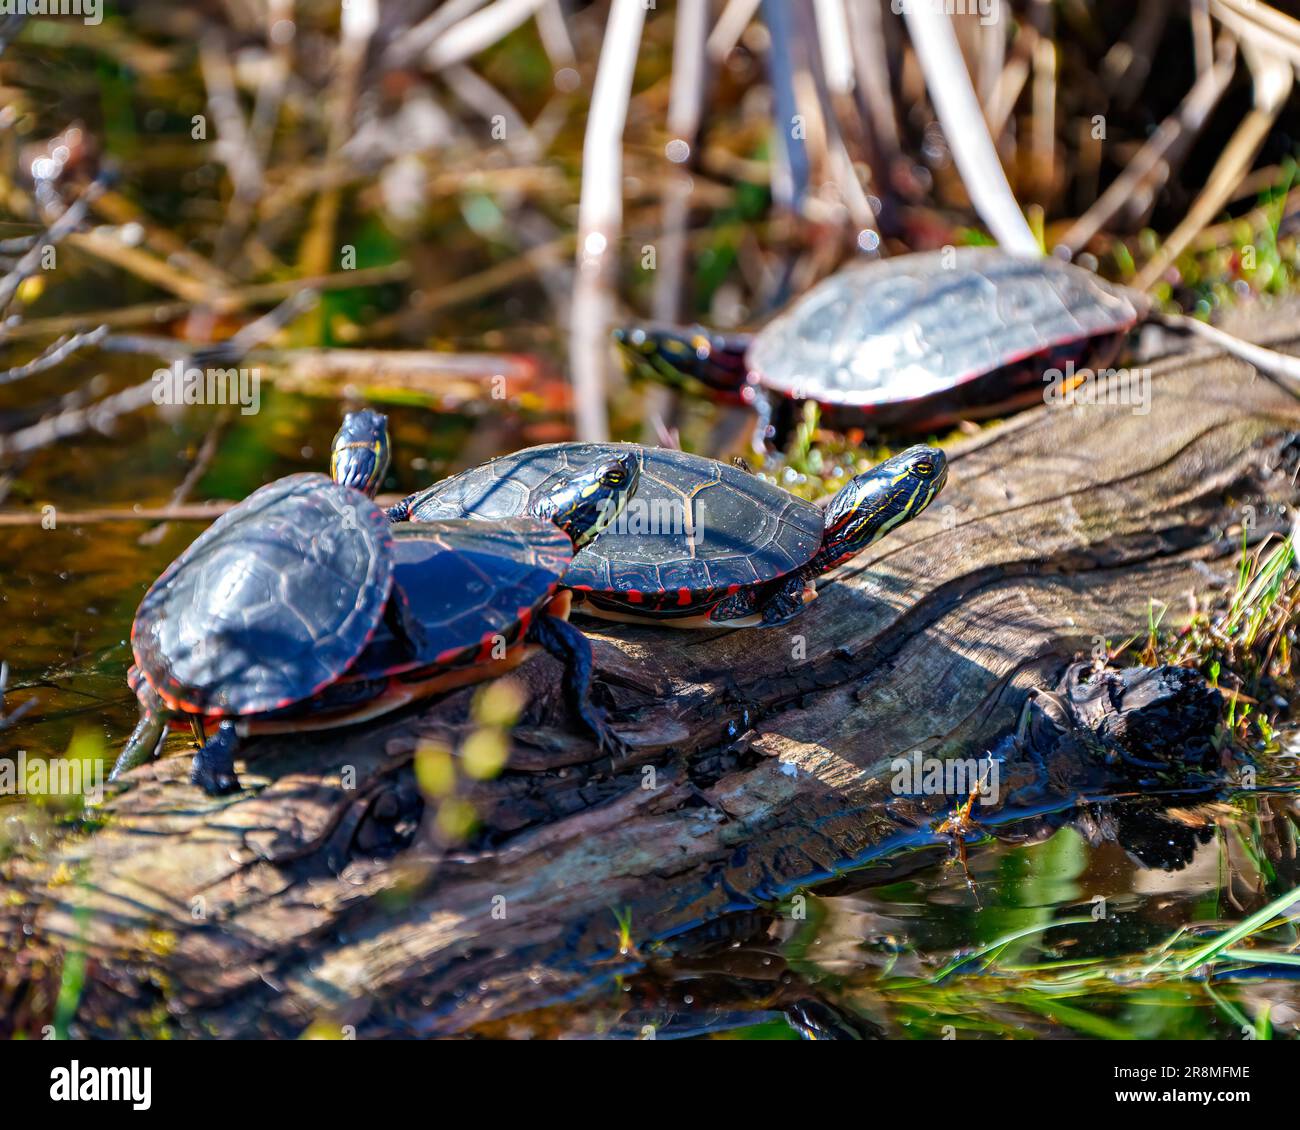 Grupo de tortugas pintadas descansando en el estanque sobre un tronco en su entorno y hábitat circundante. Imagen de tortuga. Vertical. Foto de stock